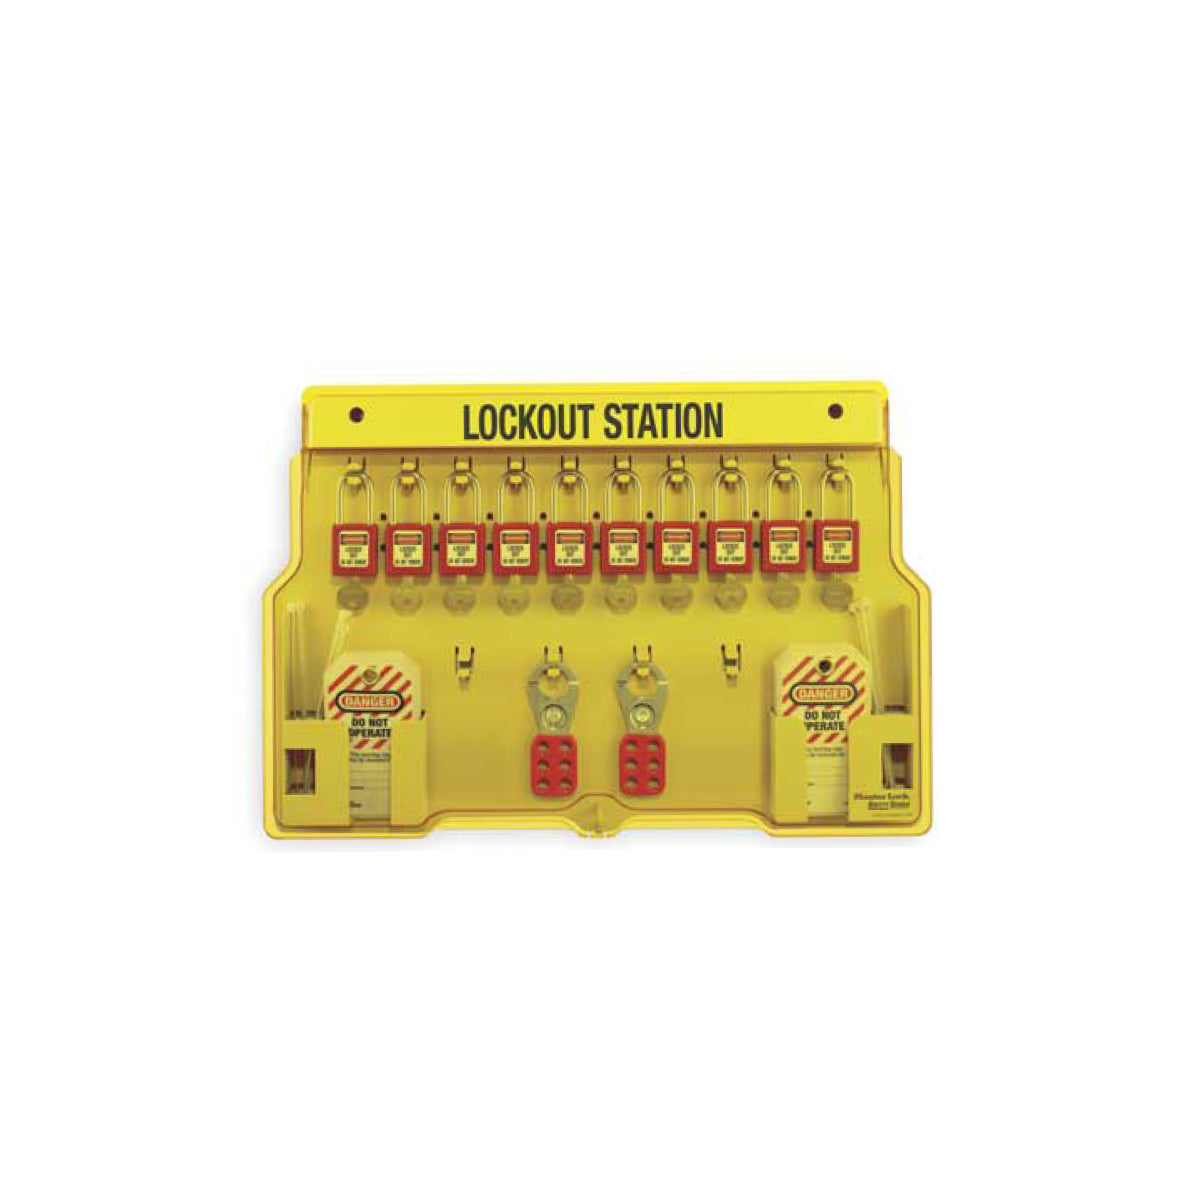 Lockout-Stationen, mit 10 roten Standart Schlössern (verschieden schliessend), 24 Sicherungsanhänger mit Kabelbinder, 2 Multischliessklammern, Masse: 558 x 393 x 44 mm